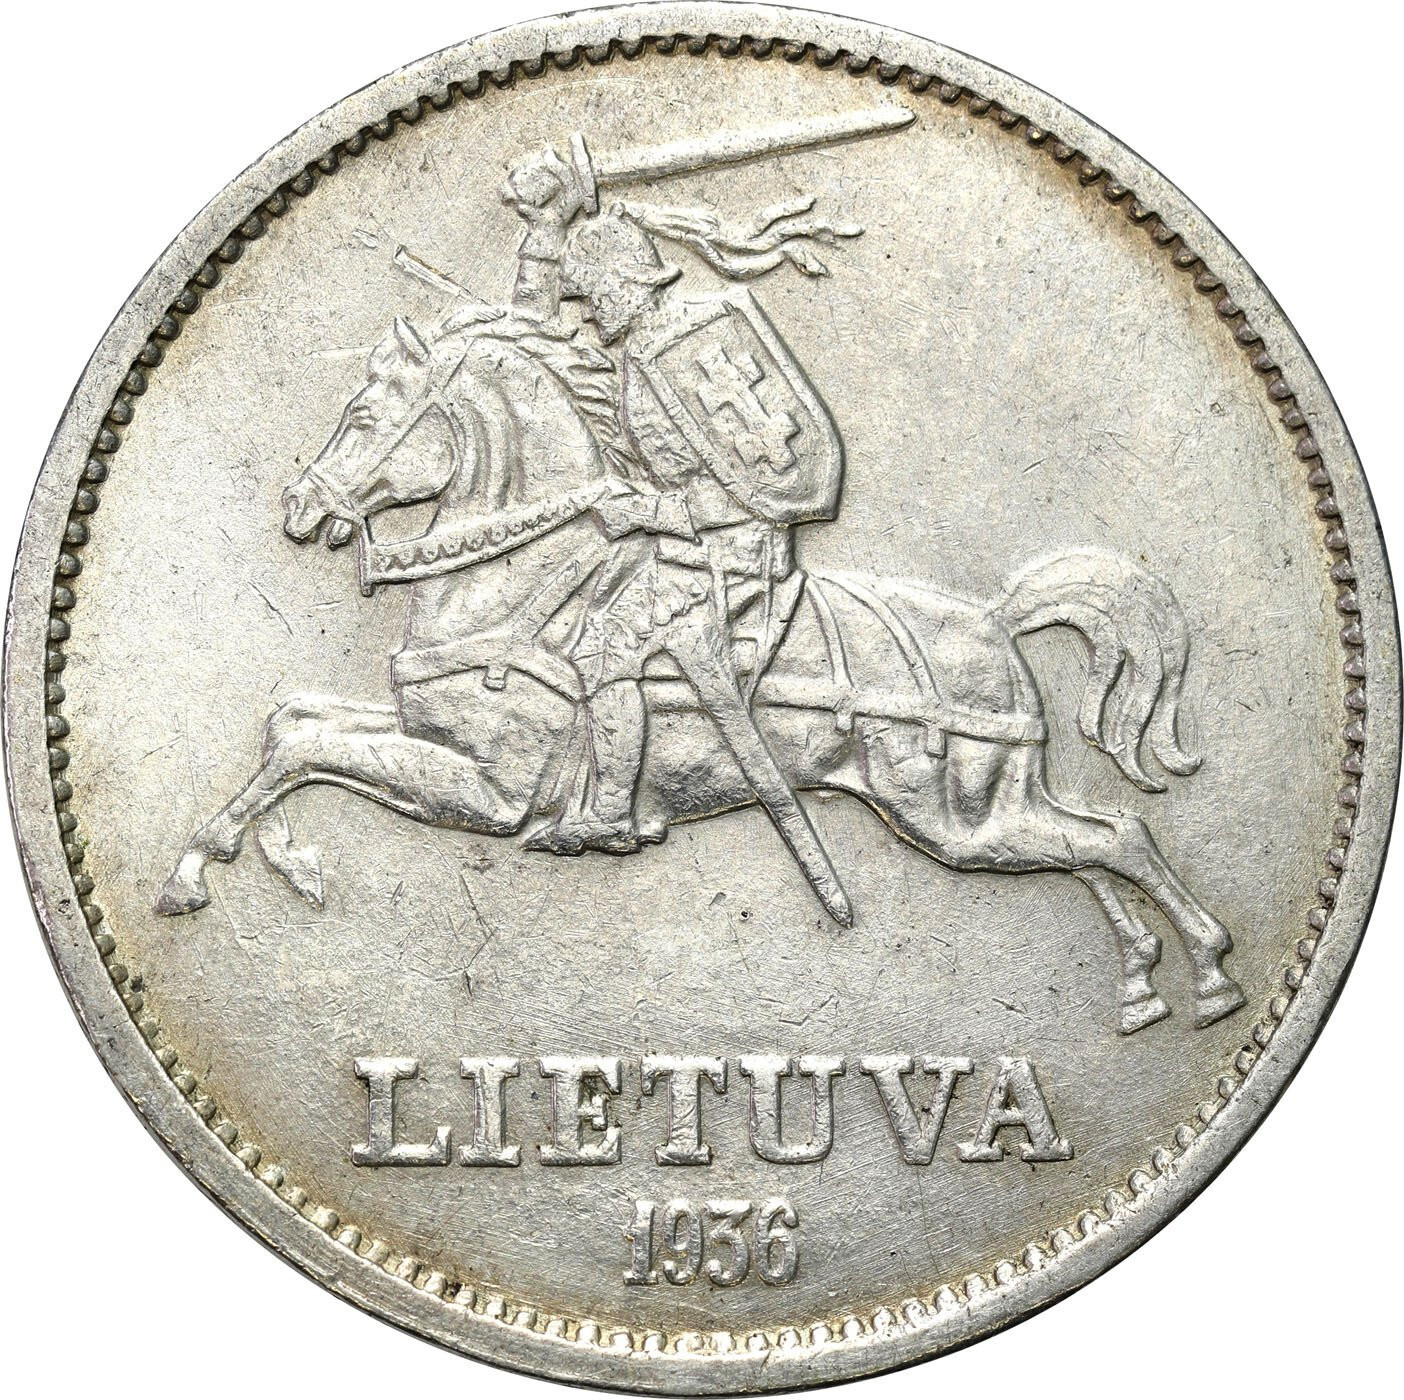 Litwa. 10 litu 1936, Kowno - Książę Witold